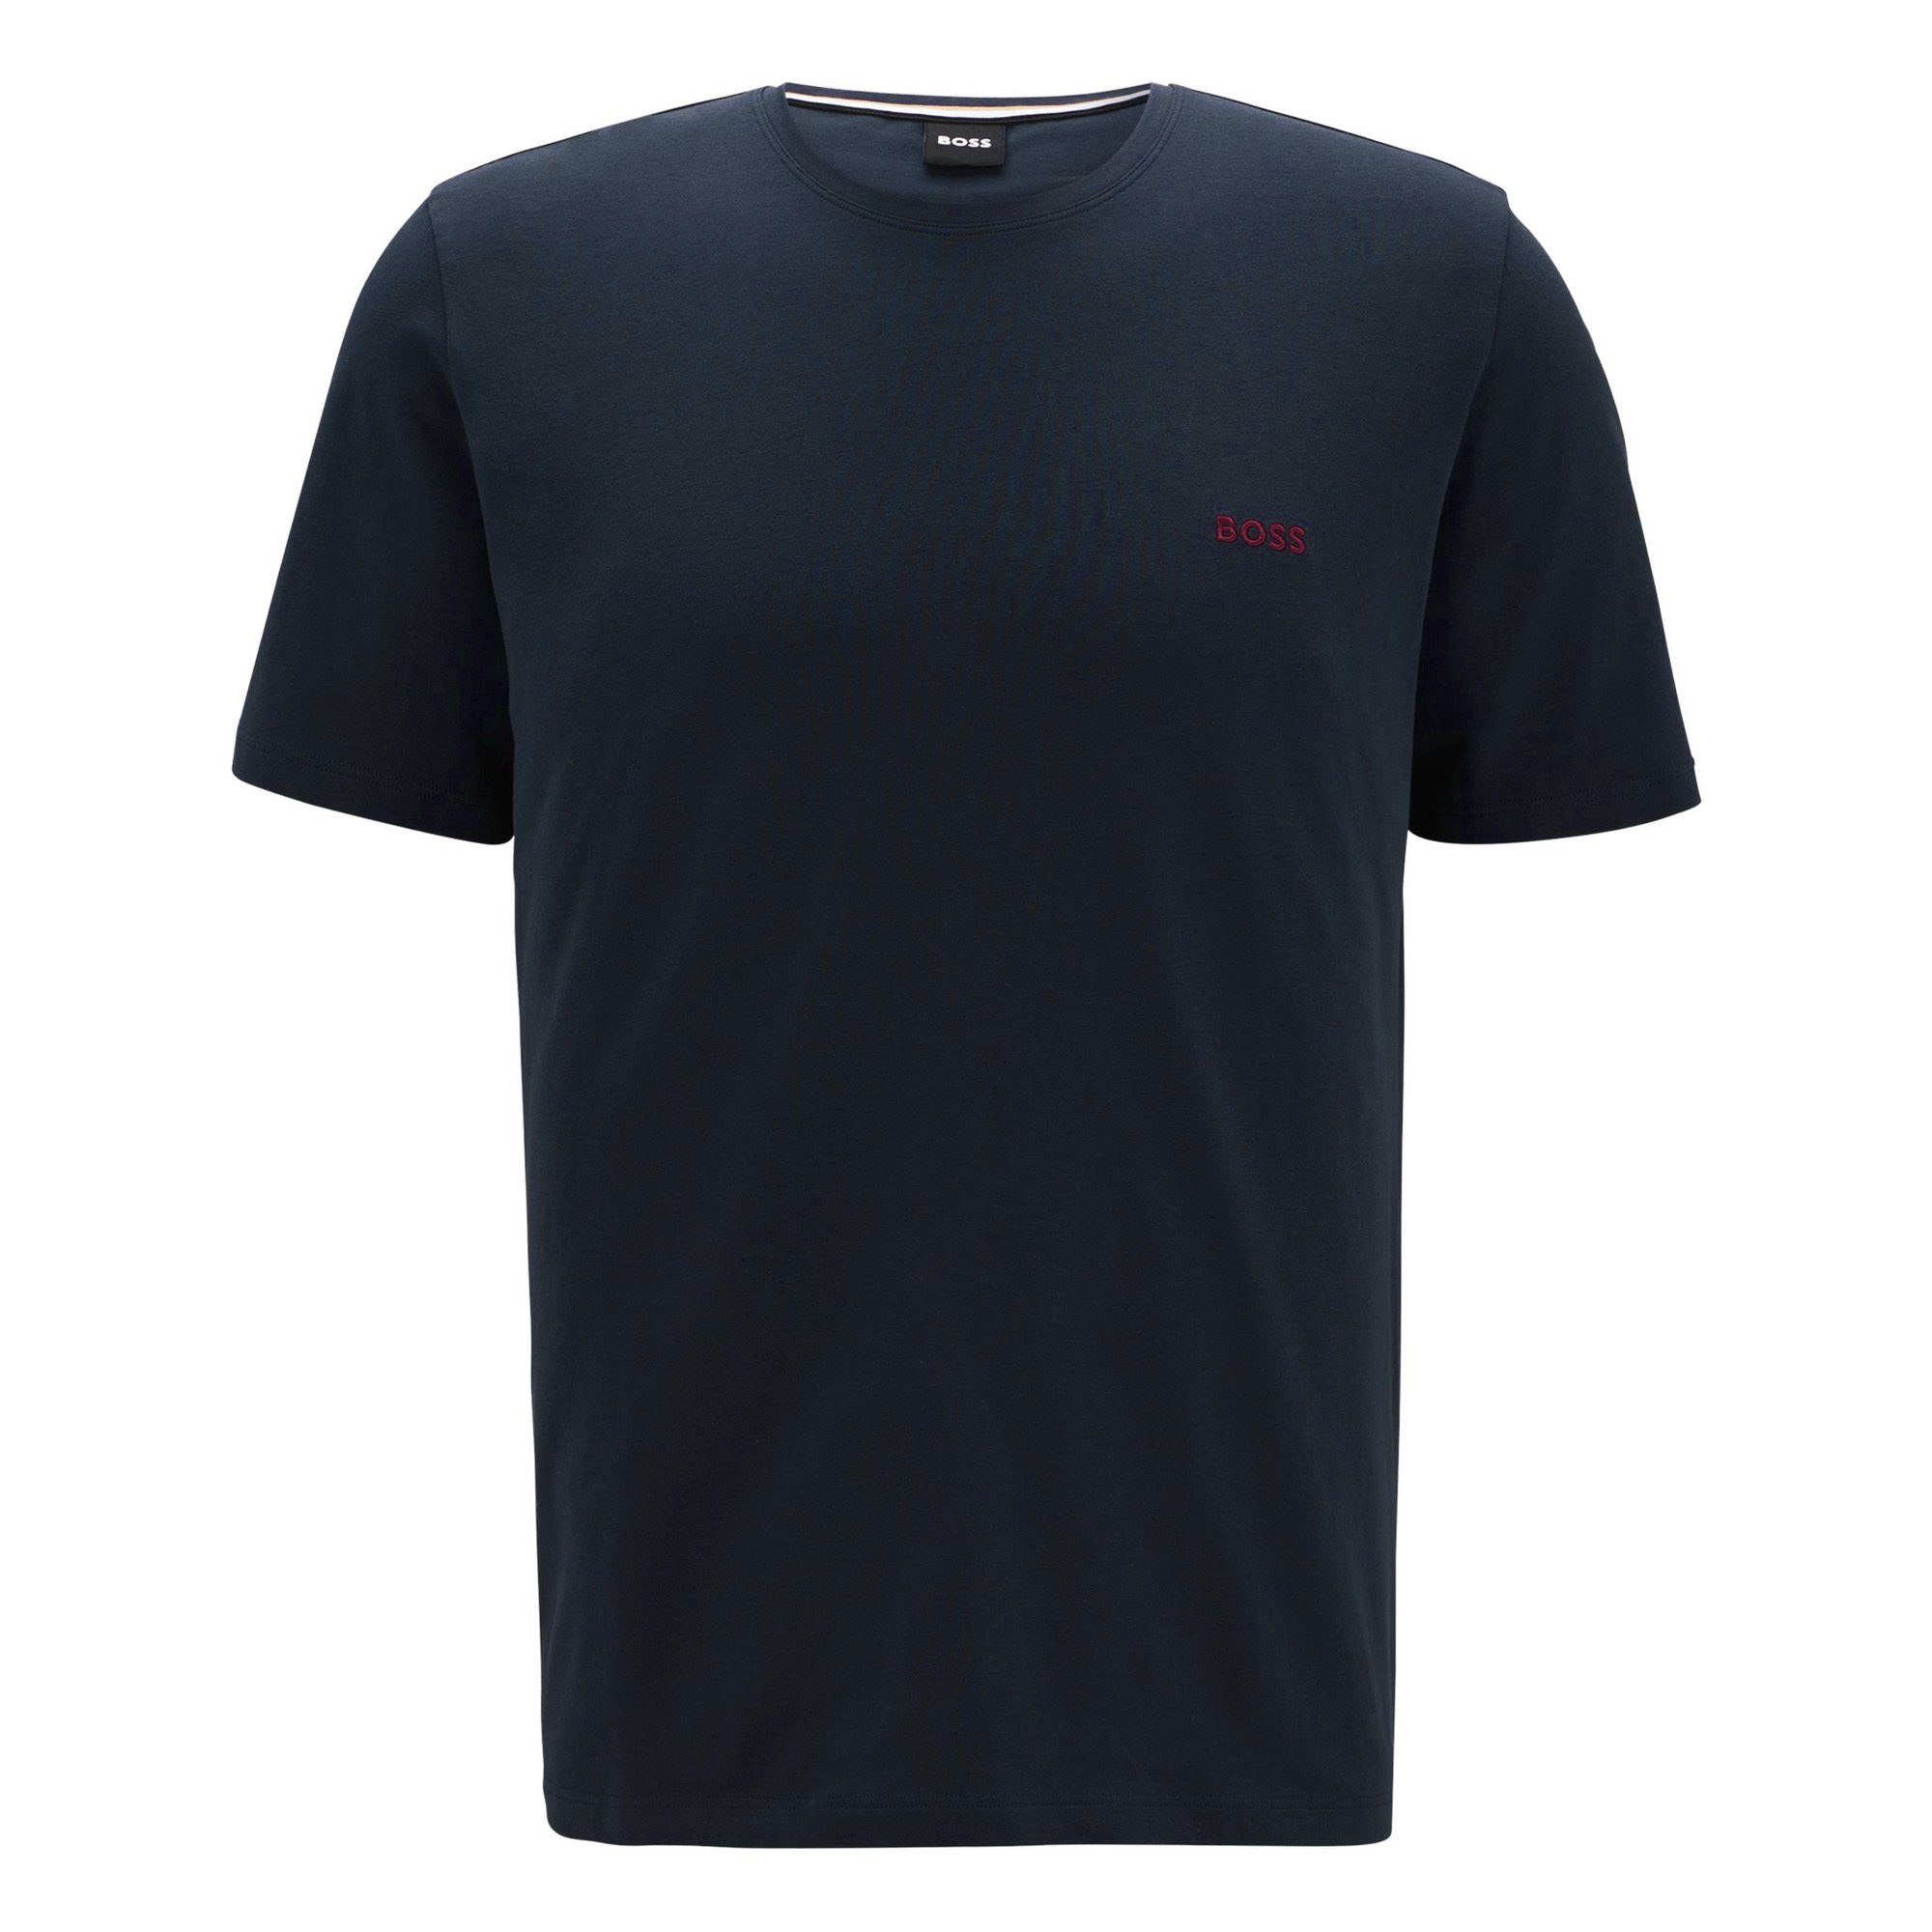 BOSS T-Shirt Herren T-Shirt - Mix & Nachtblau Baumwolle Match, Rundhals